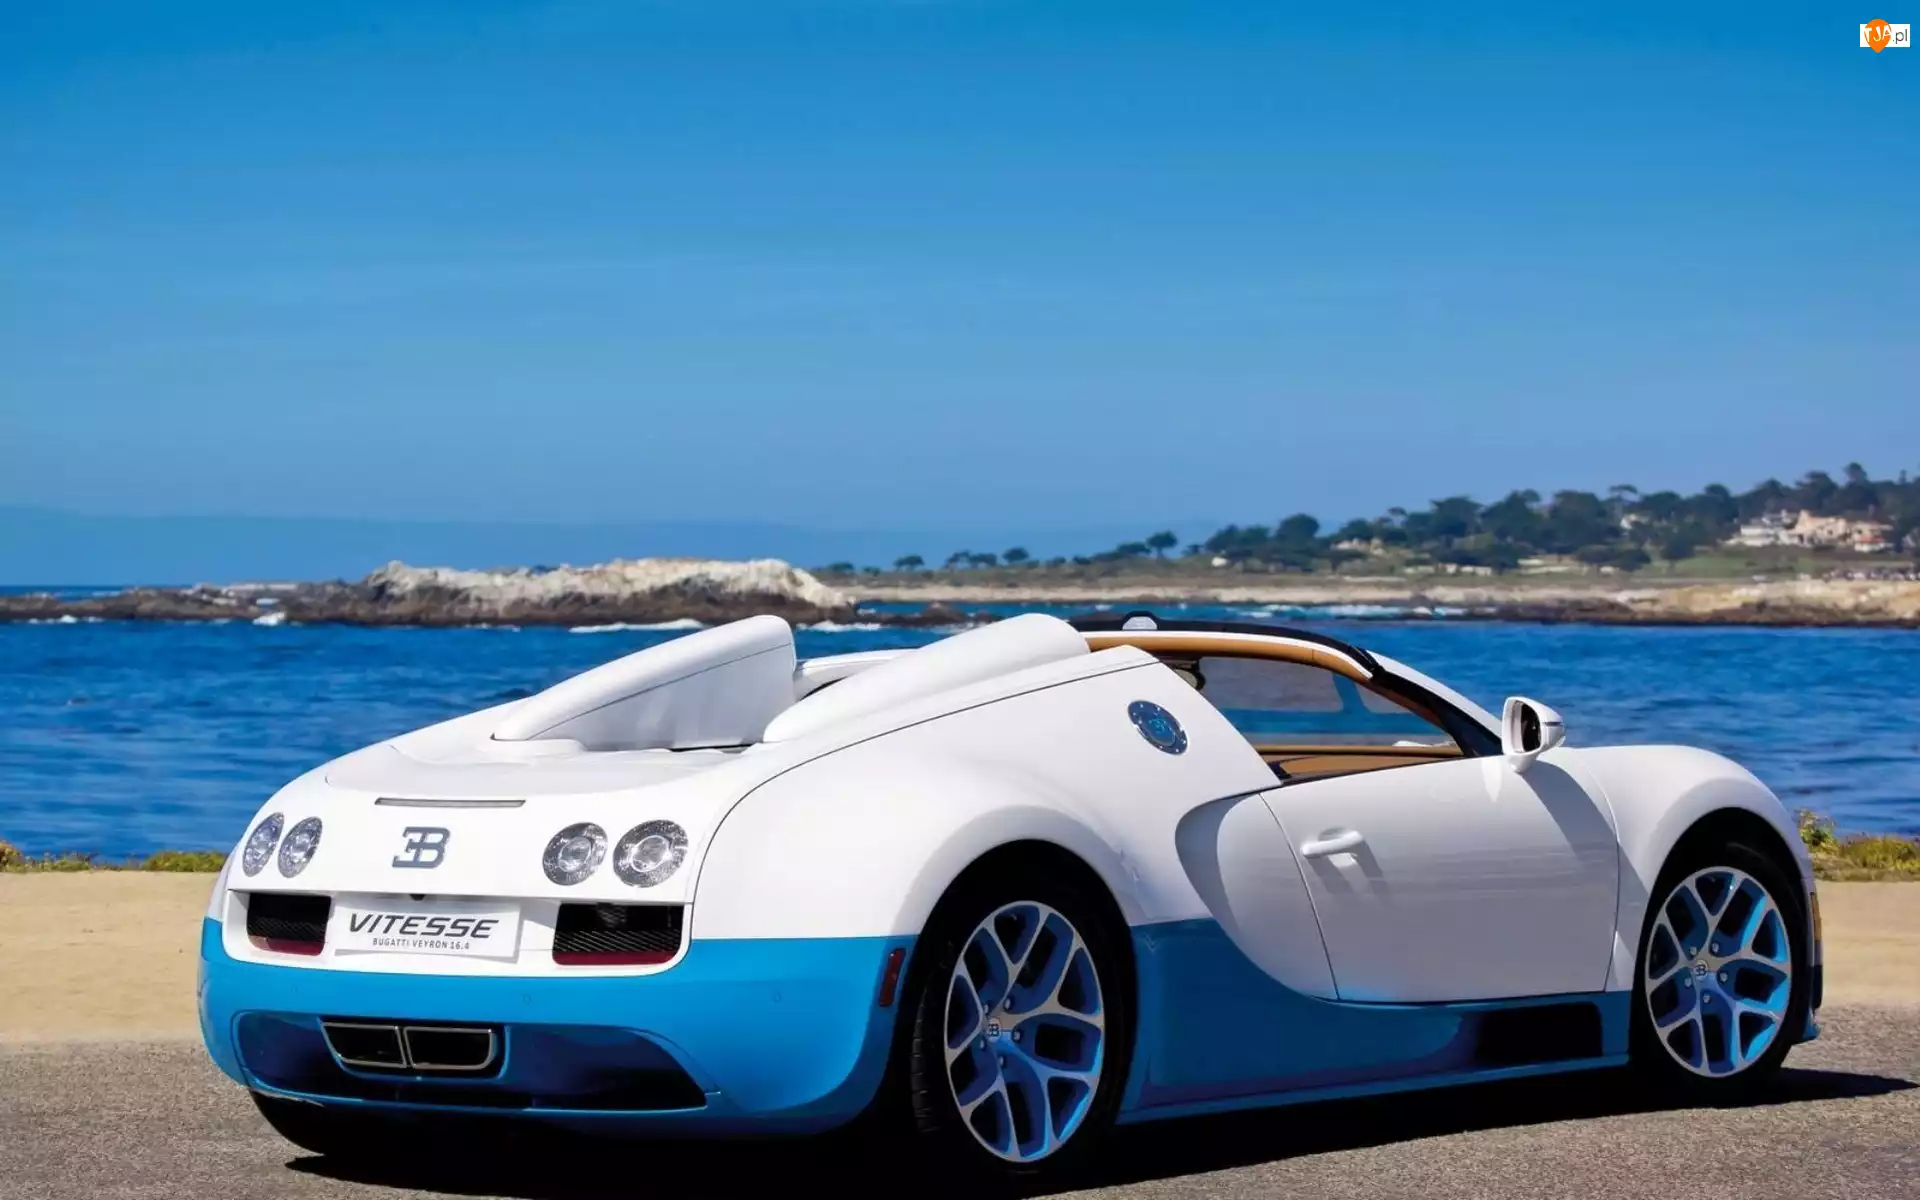 Wybrzeże, Bugatti